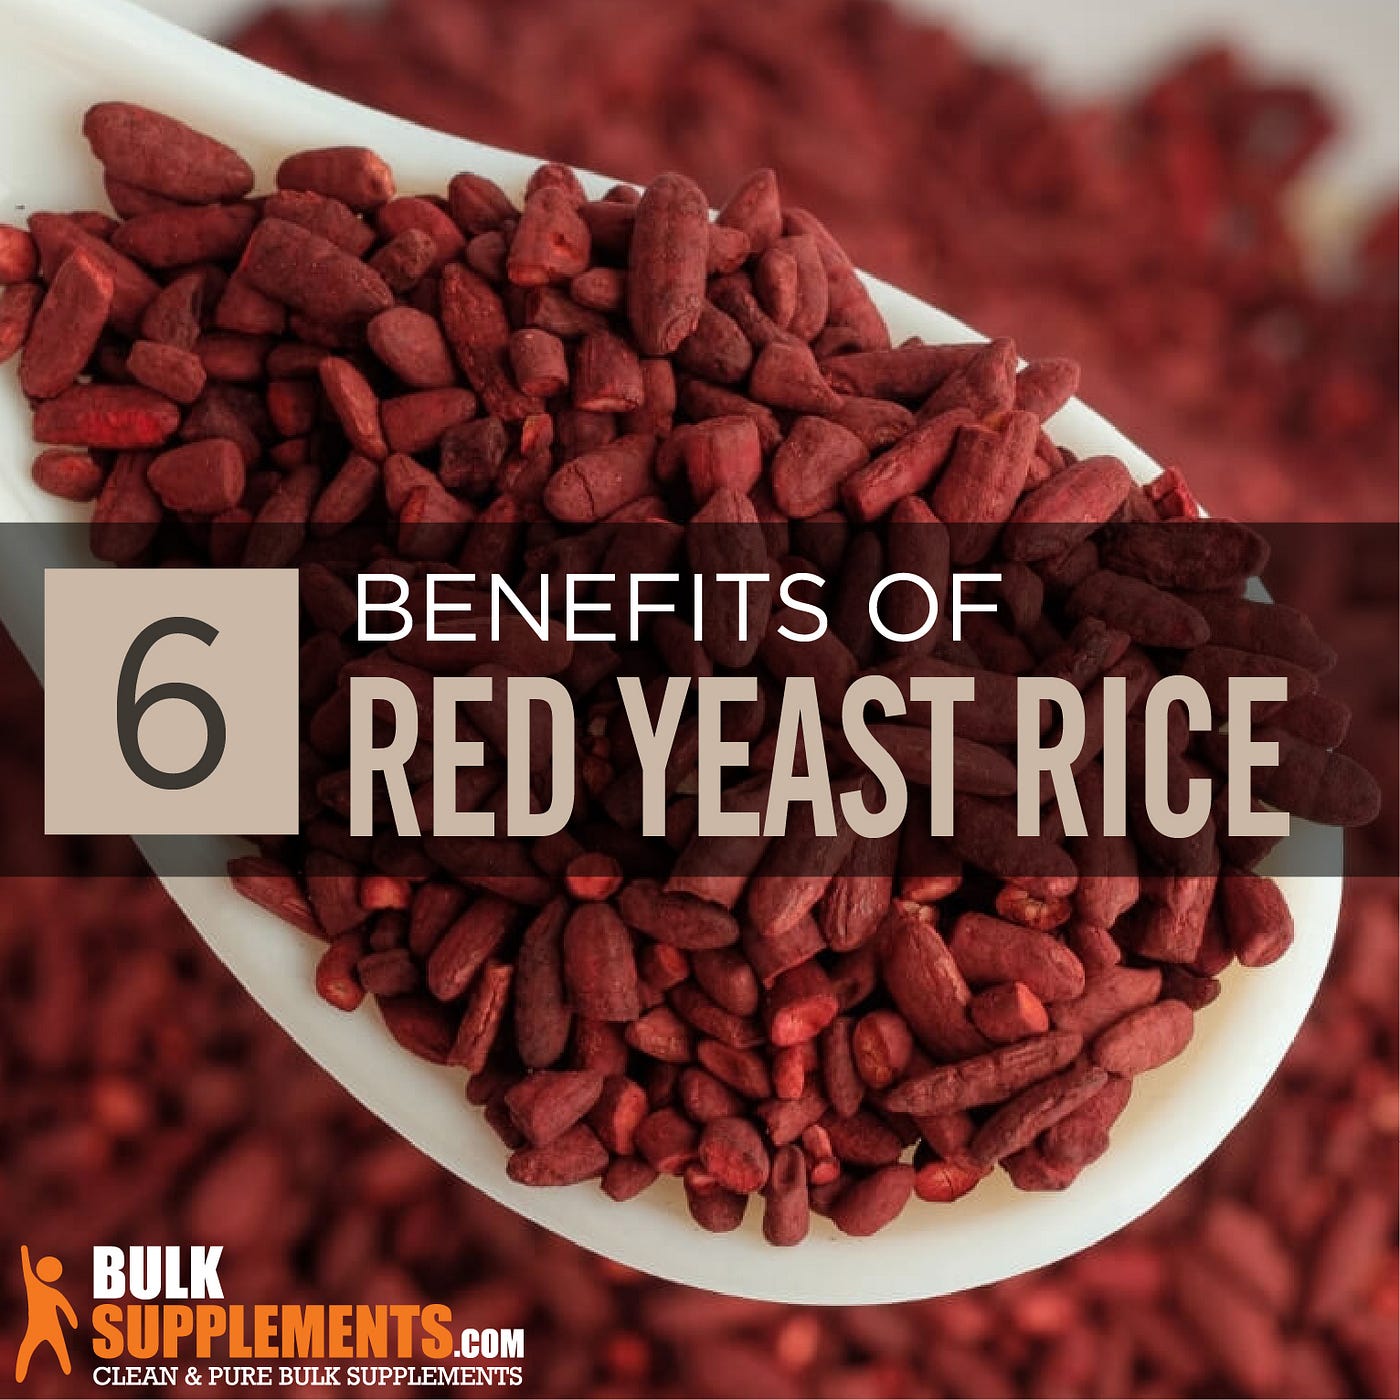 Forstærke spejder Syd Red Yeast Rice: Benefits, Side Effects & Dosage | by Rick Martin | Medium